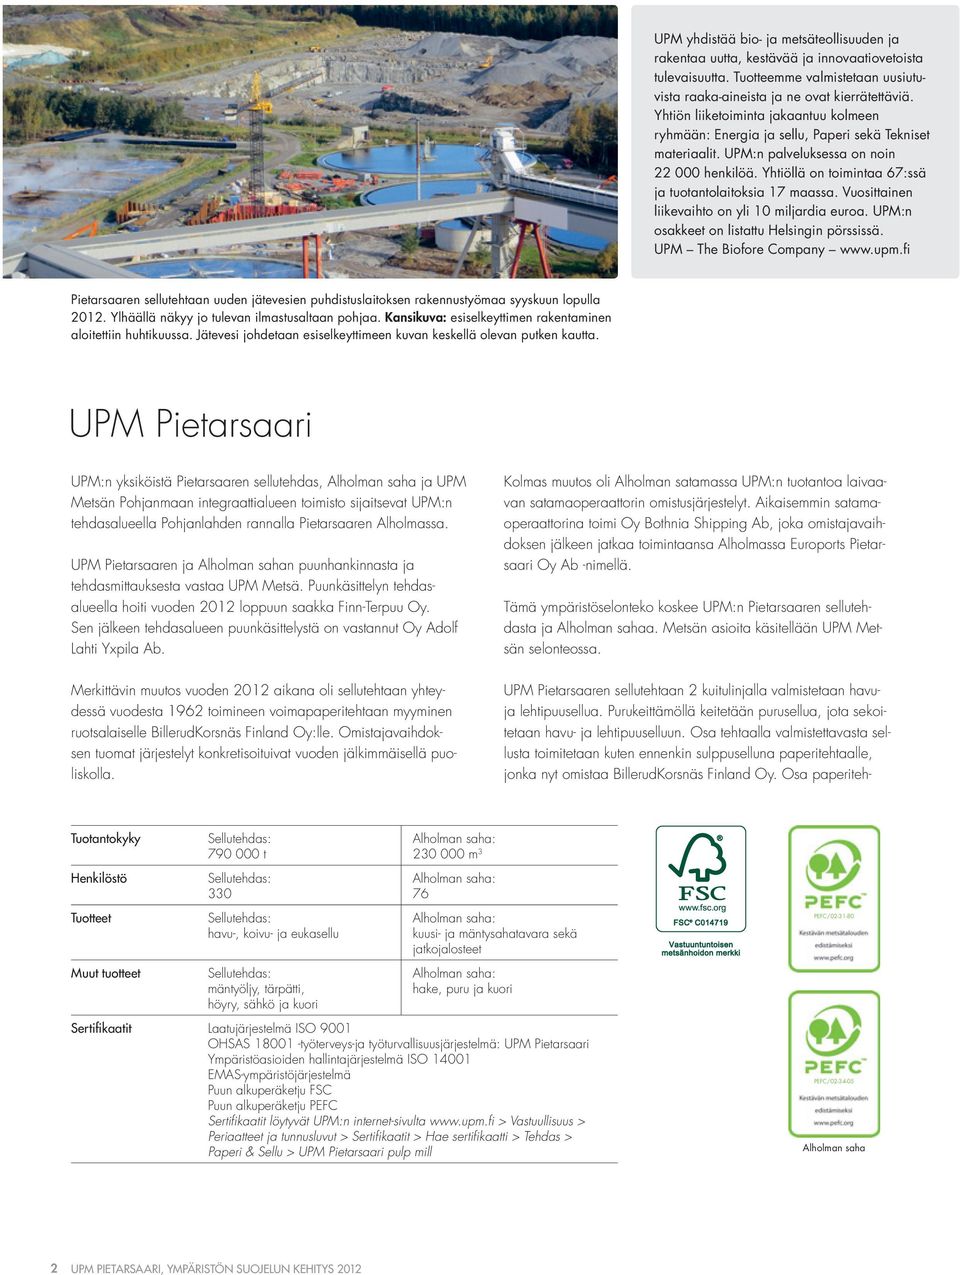 Yhtiöllä on toimintaa 67:ssä ja tuotantolaitoksia 17 maassa. Vuosittainen liikevaihto on yli 1 miljardia euroa. UPM:n osakkeet on listattu Helsingin pörssissä. UPM The Biofore Company www.upm.